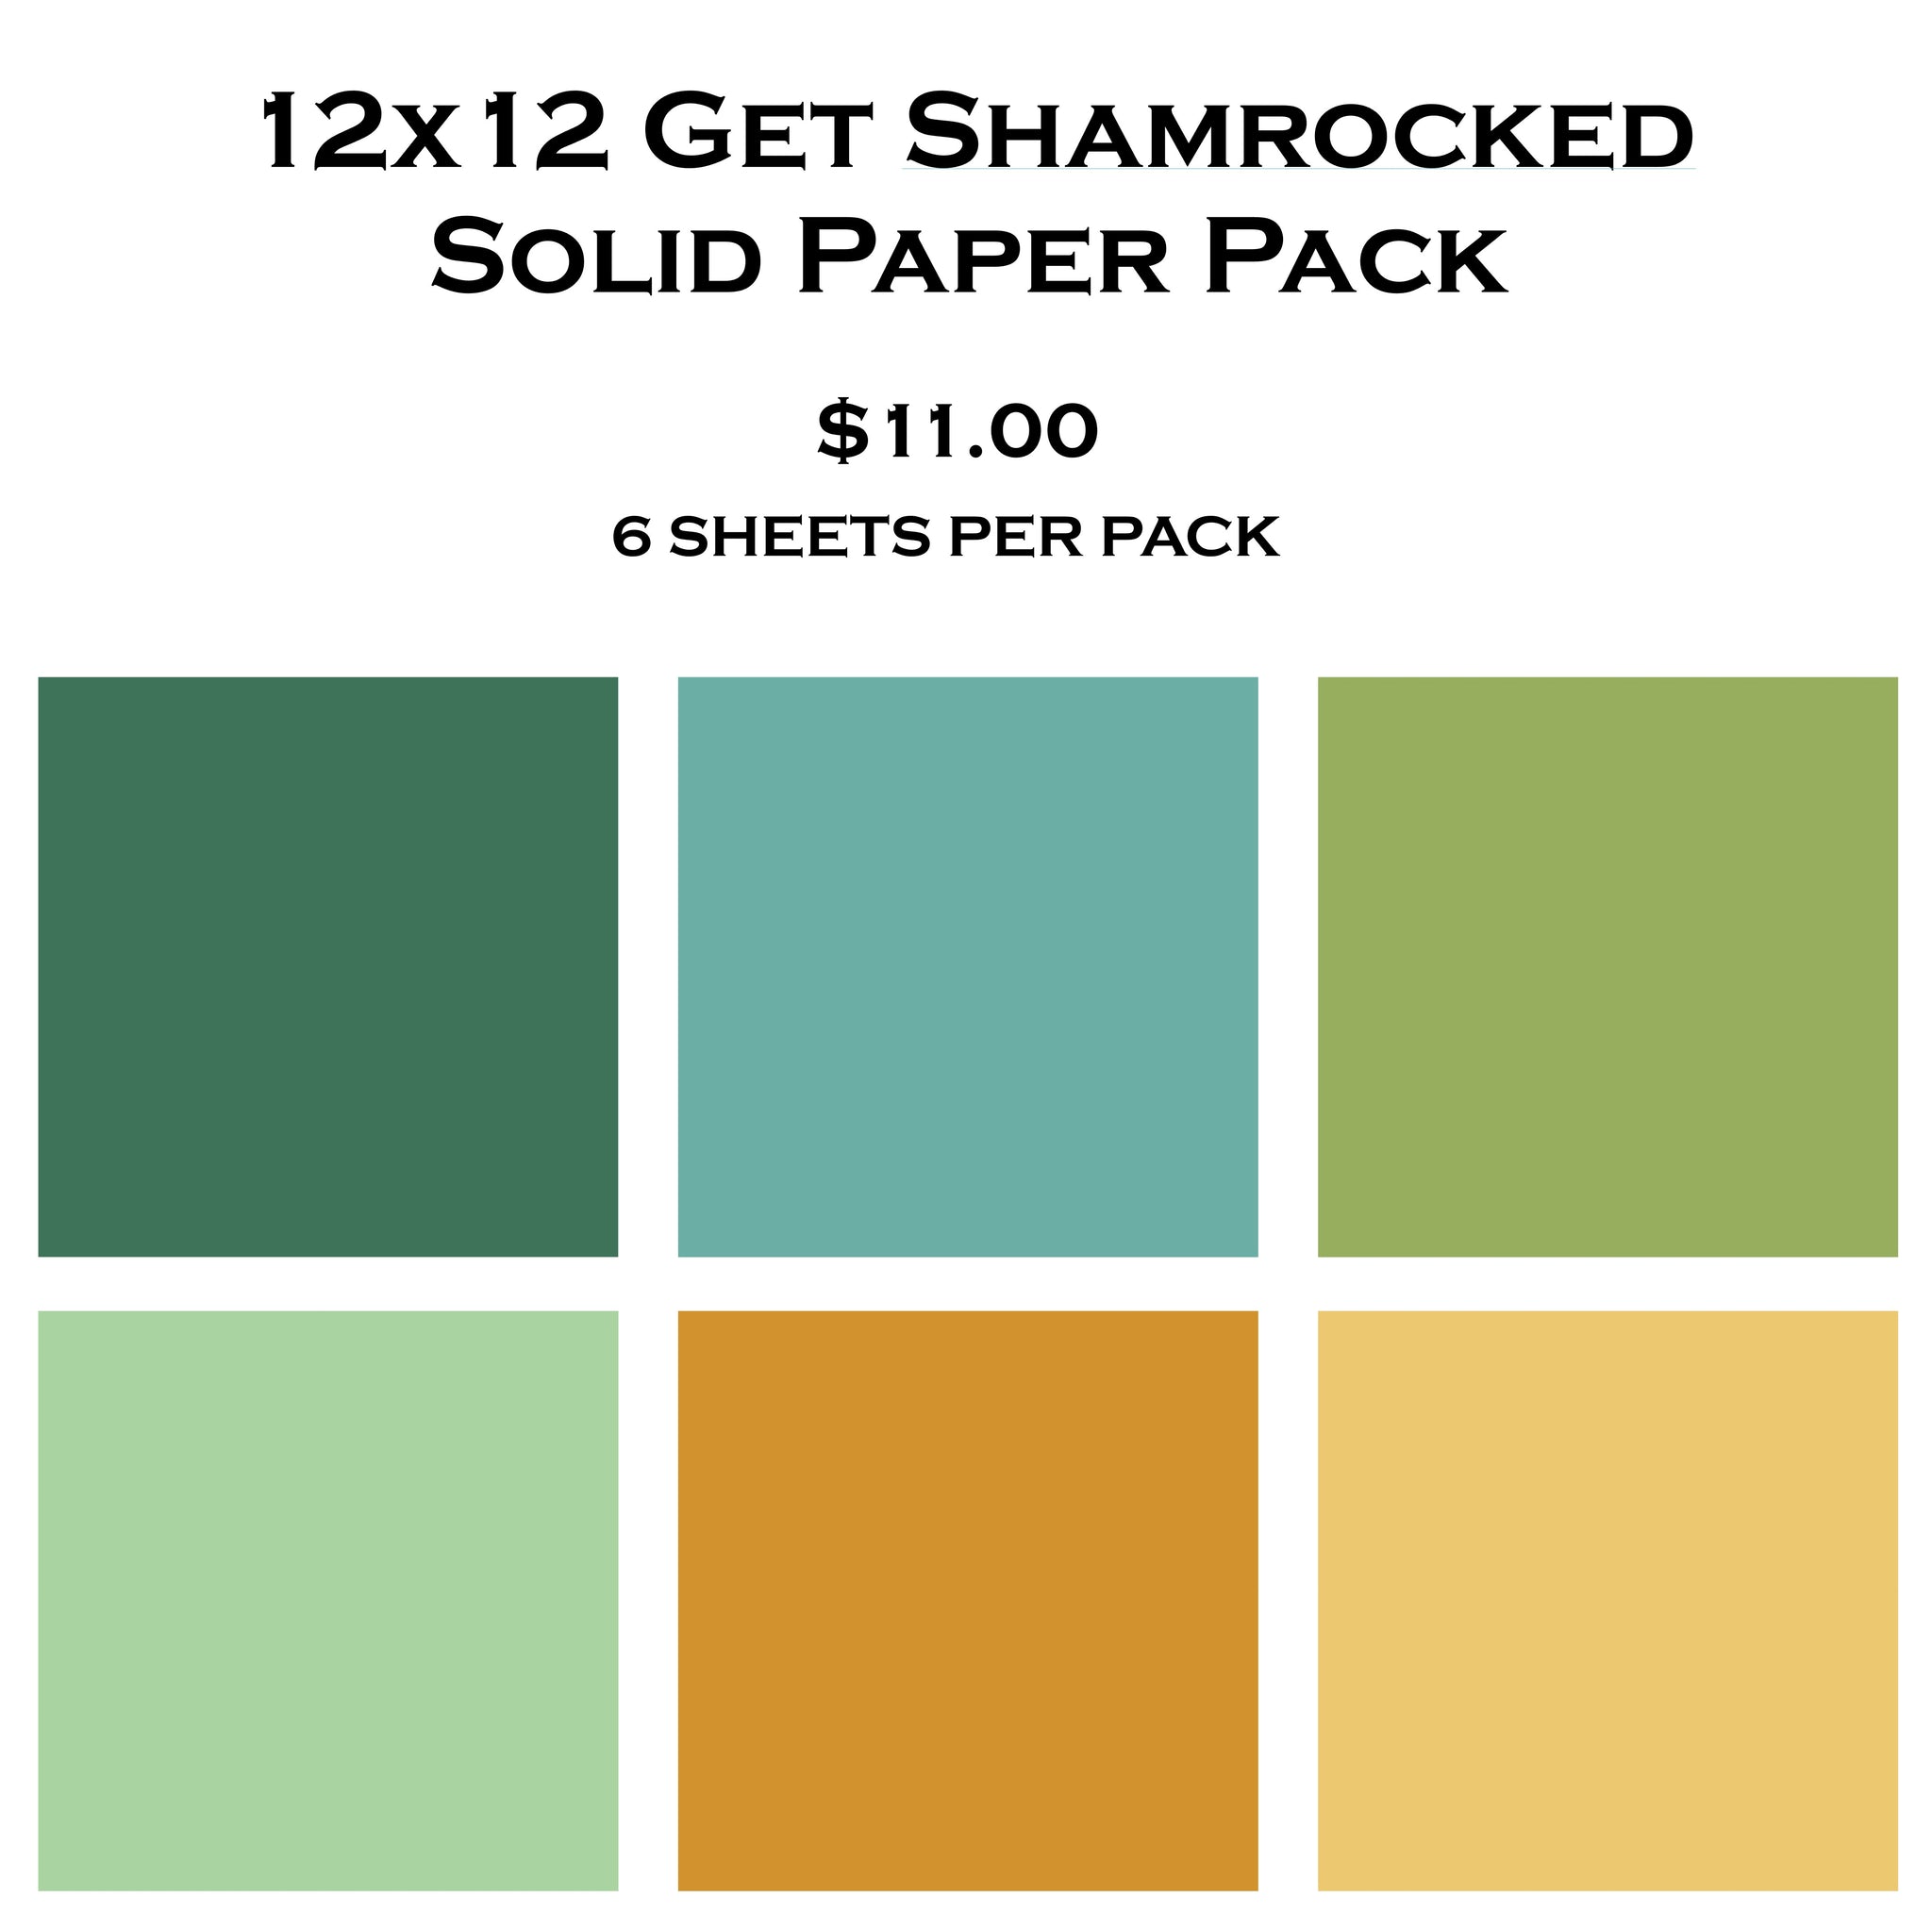 Get Shamrocked 12x12 Solid Paper Pack